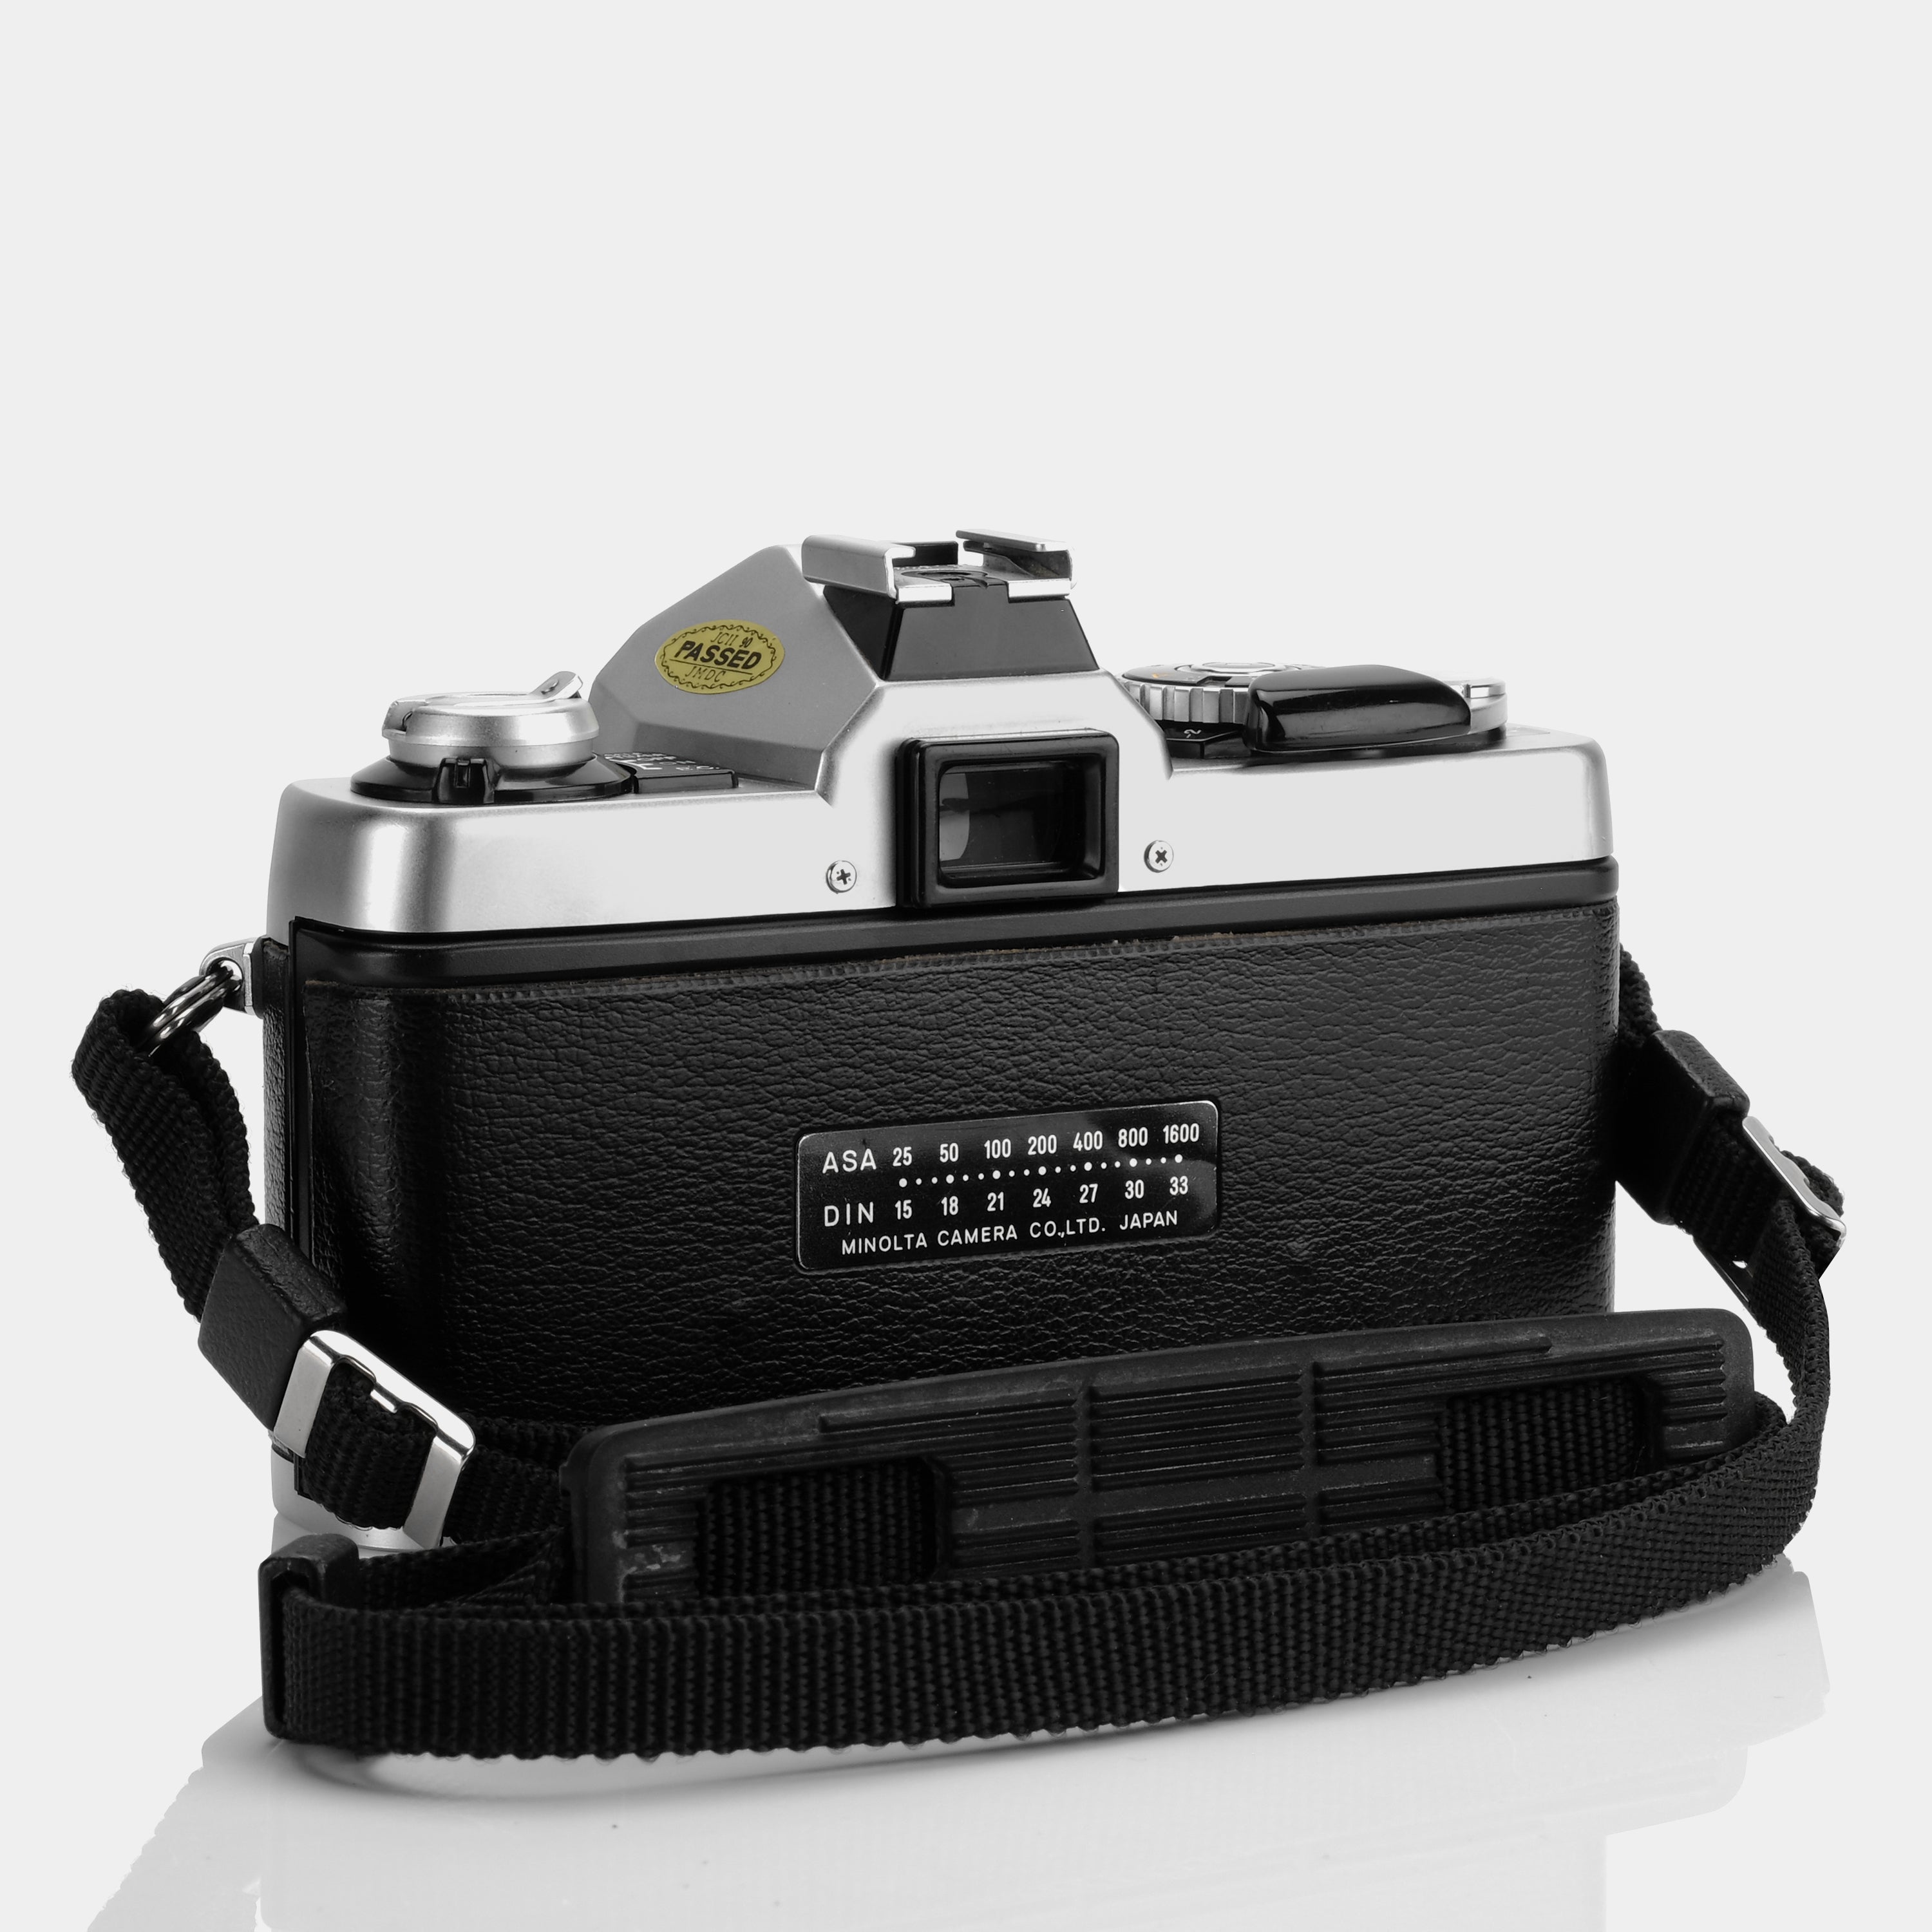 Minolta XG-1 SLR 35mm Film Camera